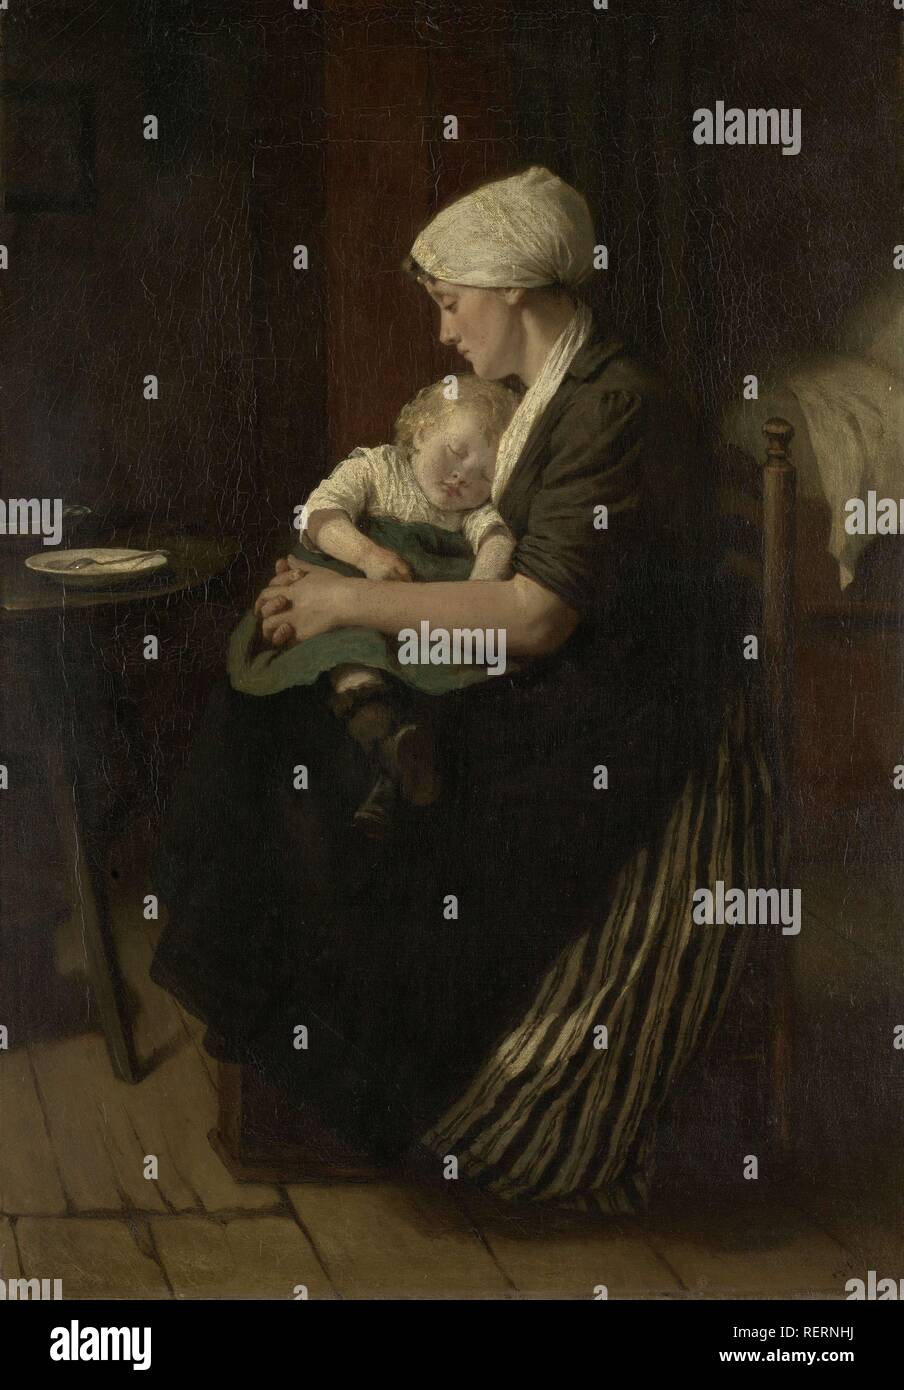 Eingelullt, um zu schlafen. Dating: 1871. Maße: H 56 cm x W 39 cm. Museum: Rijksmuseum, Amsterdam. Autor: David Burdeny. Stockfoto